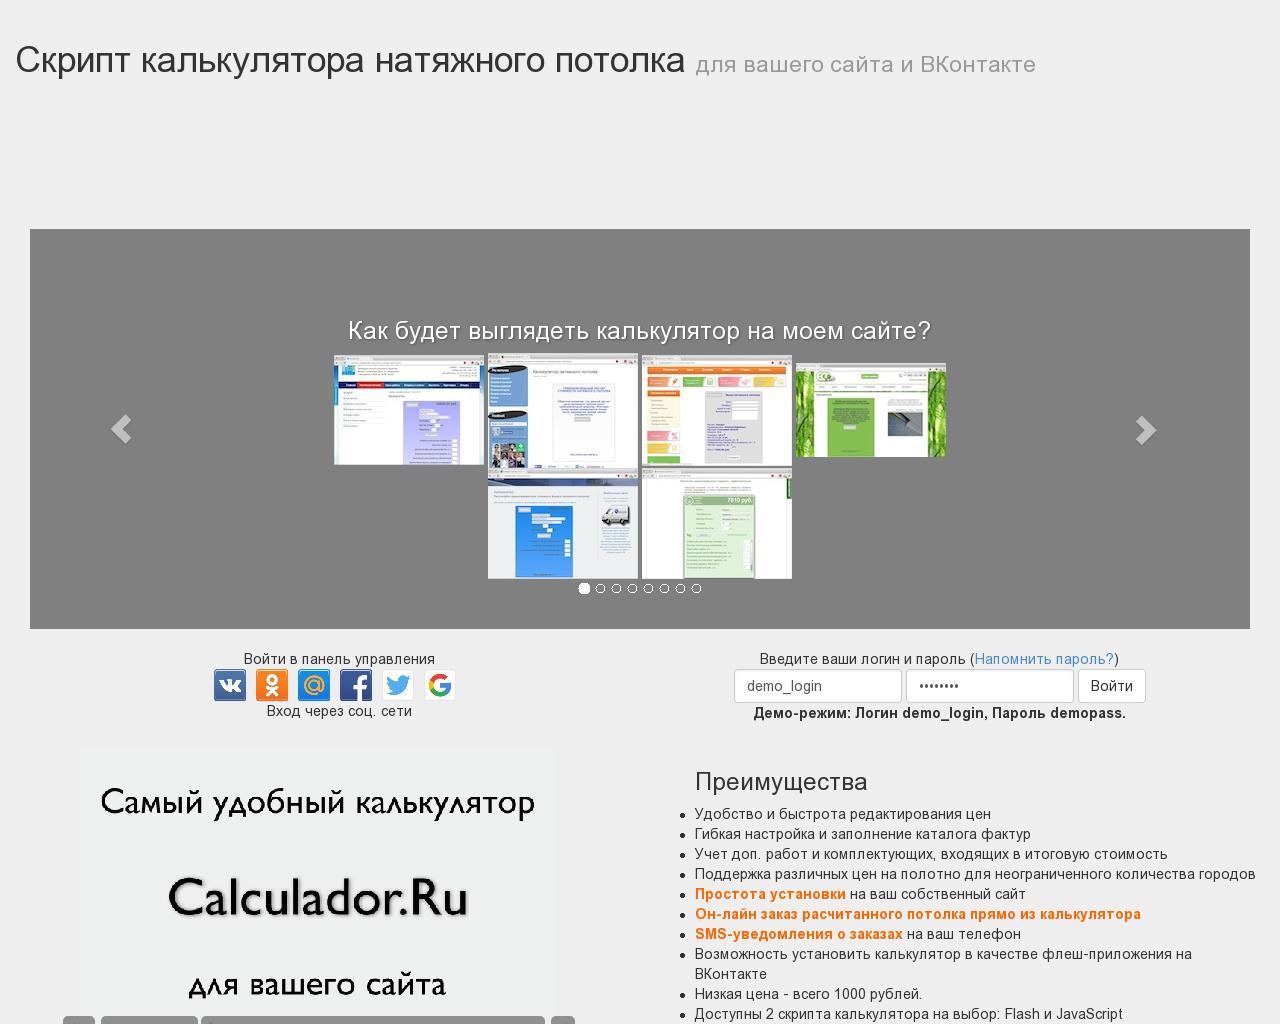 Изображение сайта calculador.ru в разрешении 1280x1024